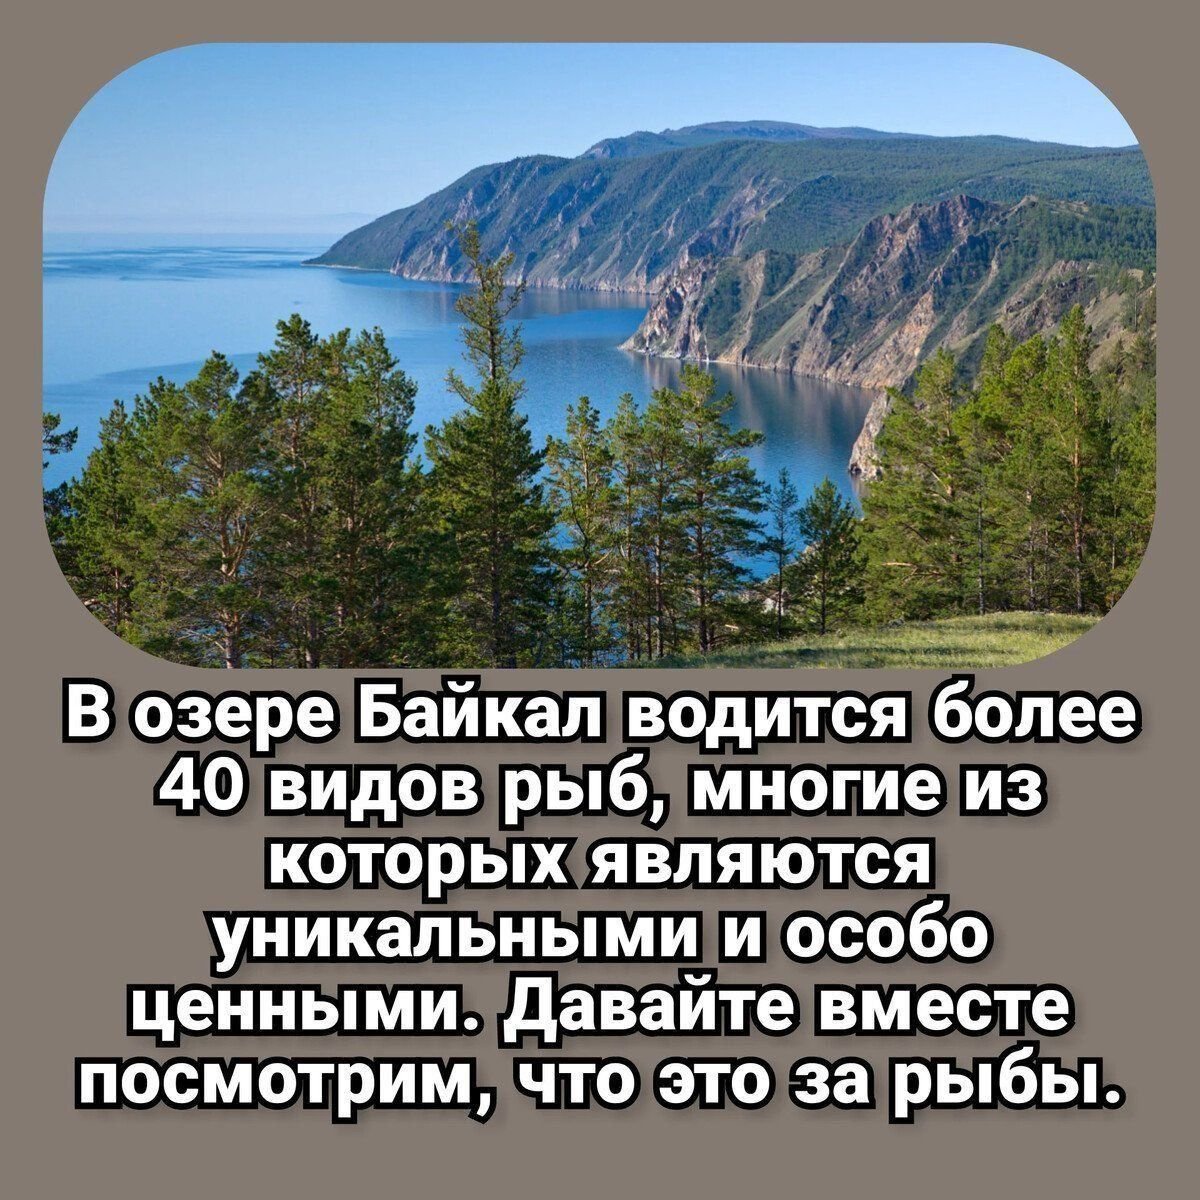 Самое крупное пресное озеро в мире. Байкал пресноводное озеро. Кто обитает в озере Байкал. Самое большое озеро в России. Рыбы Байкала.